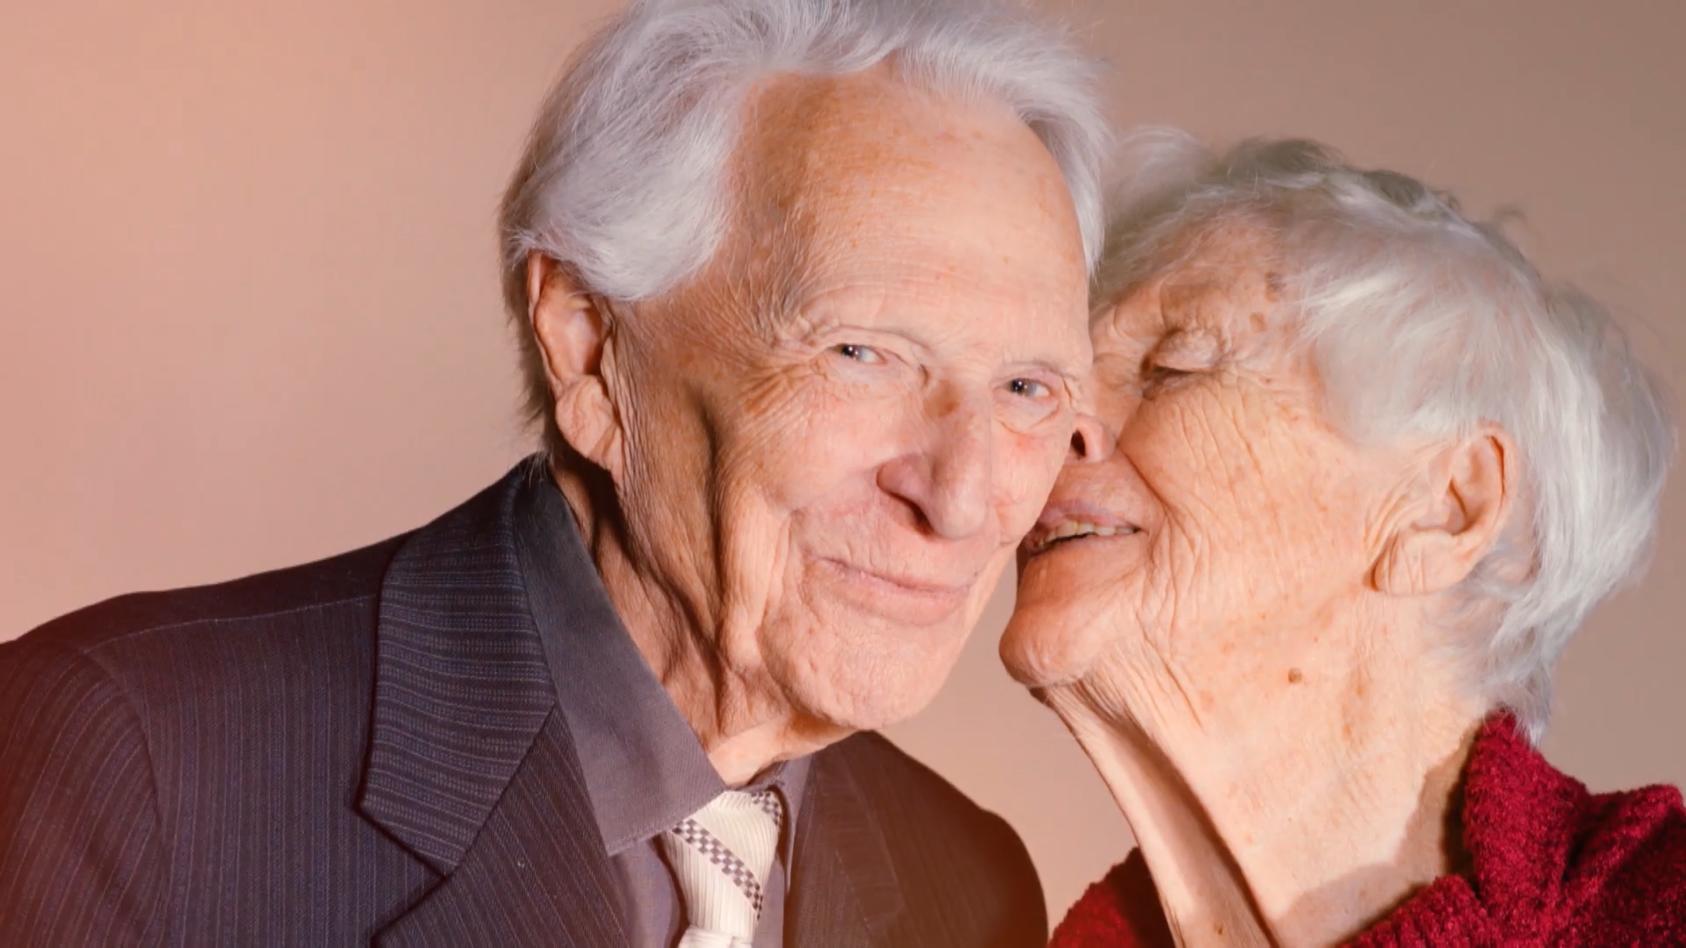 Uno und Linda haben endlich zueinander gefunden Happy End nach 70 (!) Jahren